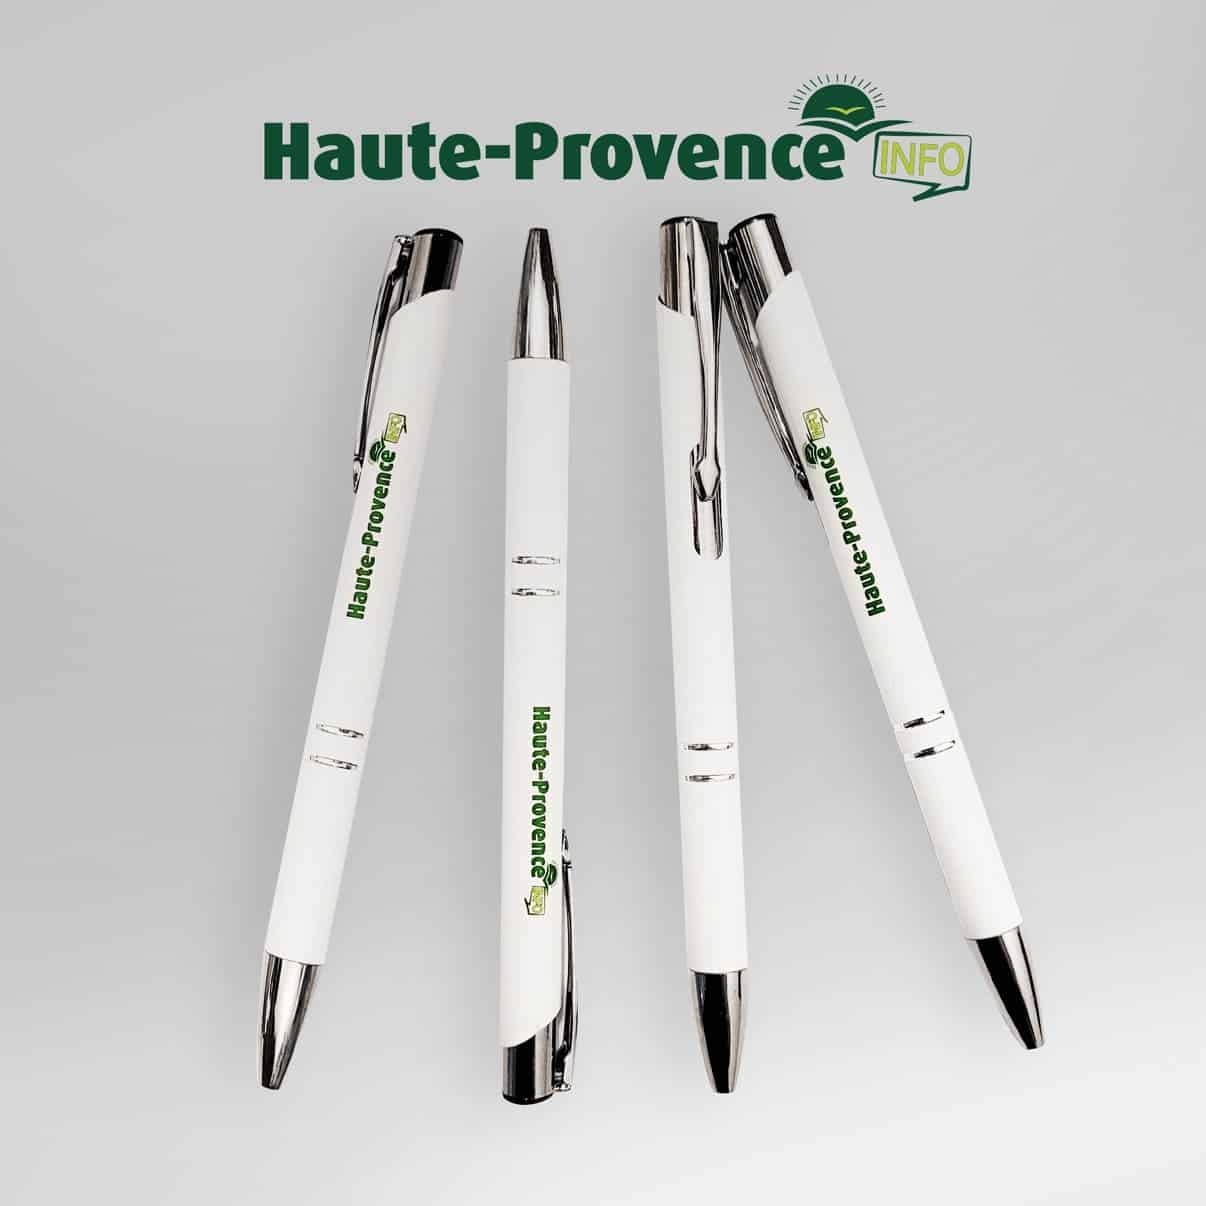 Stylos pour Haute-Provence Info (HPI)